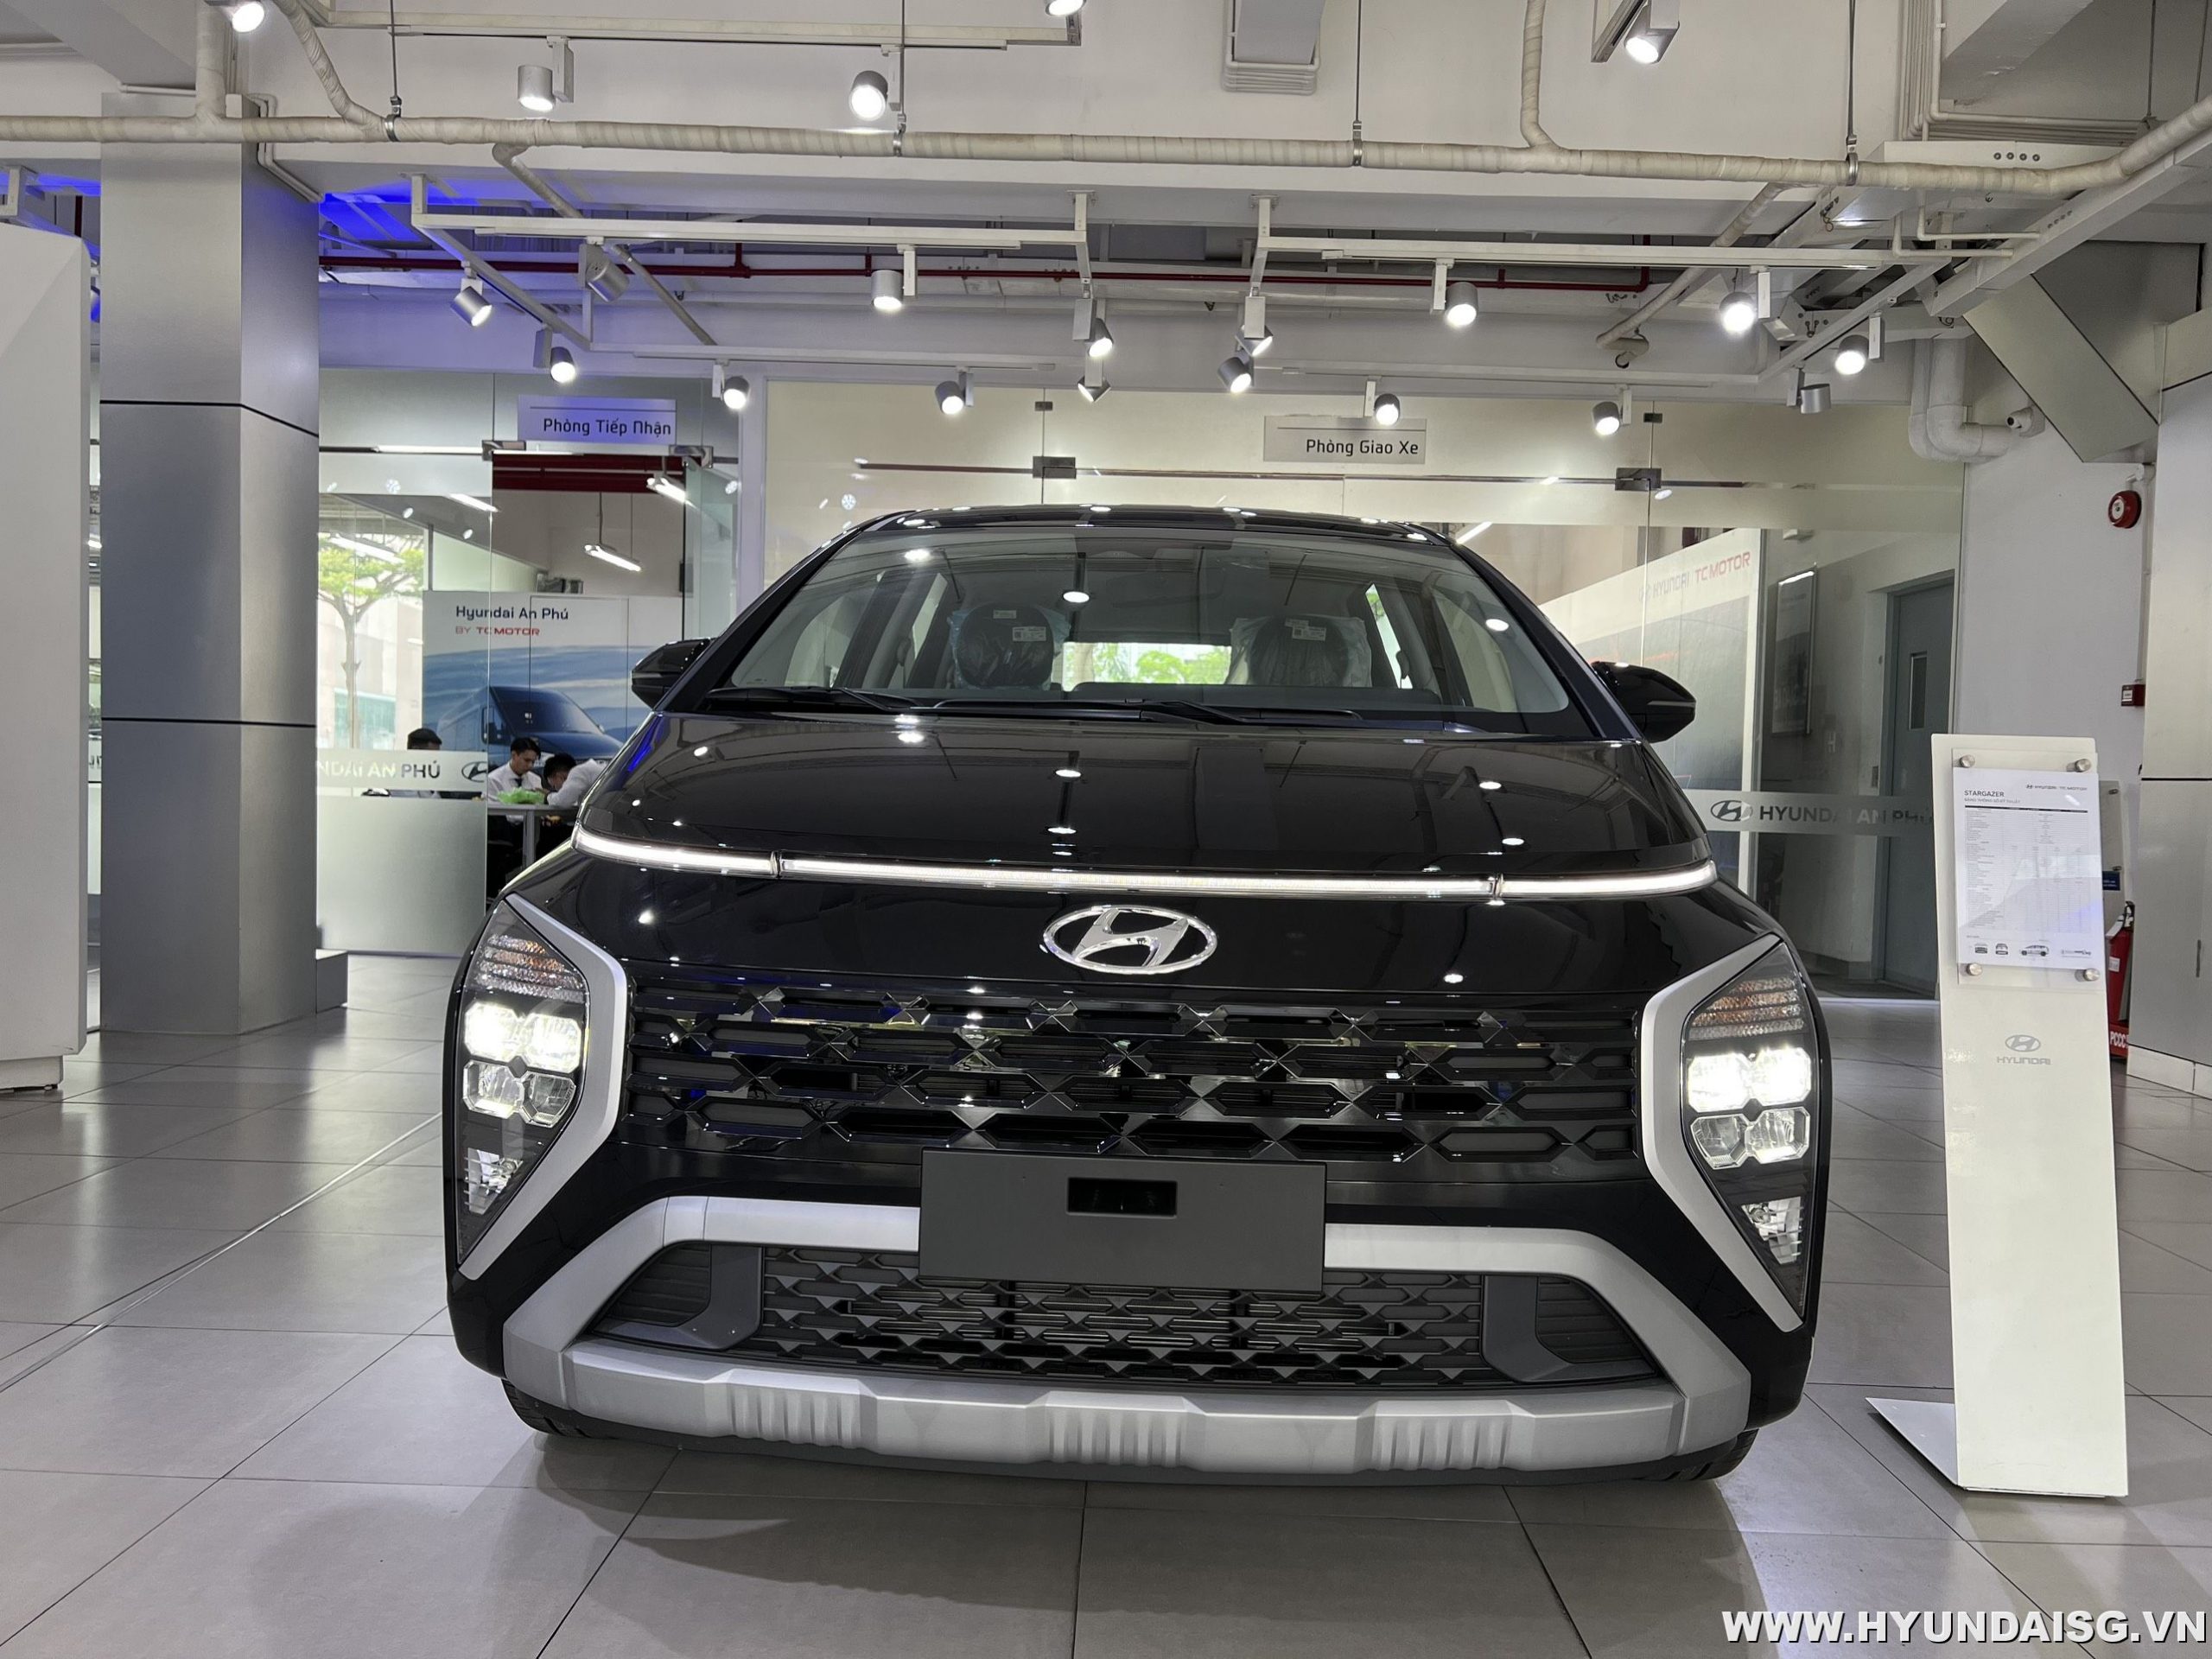 Read more about the article Hướng dẫn sử dụng xe Hyundai Stargazer cho người mới